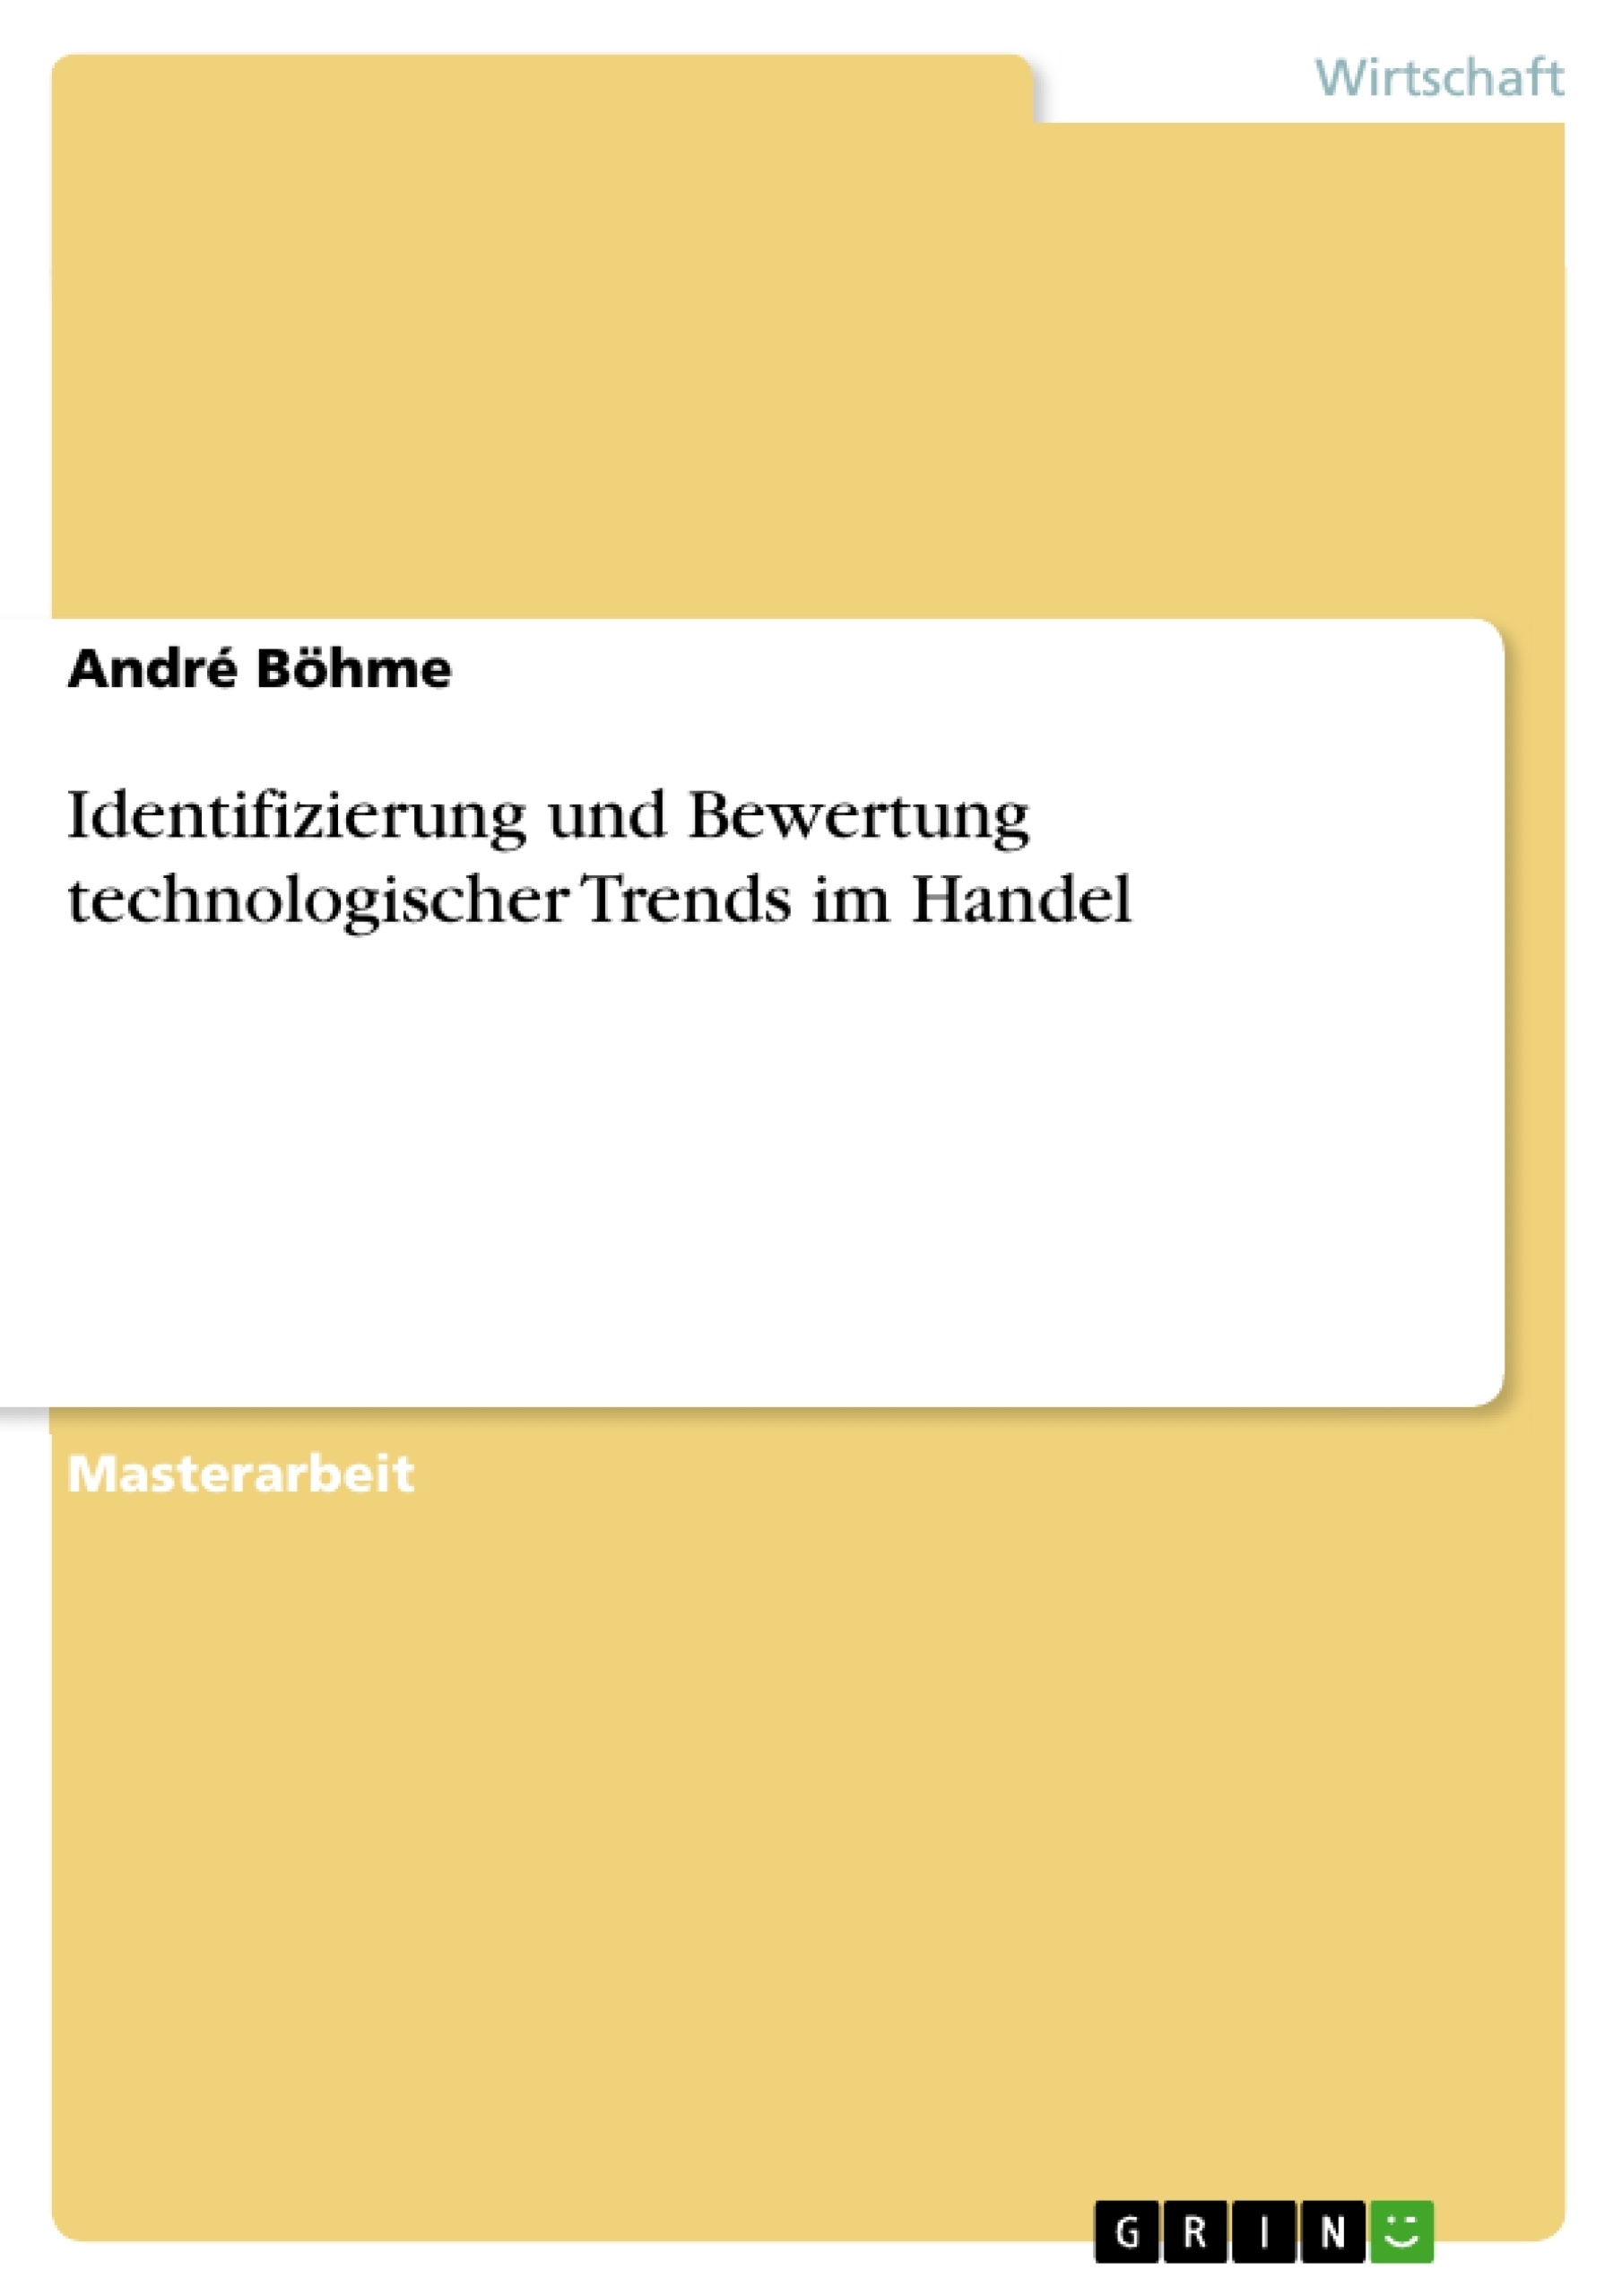 Título: Identifizierung und Bewertung technologischer Trends im Handel